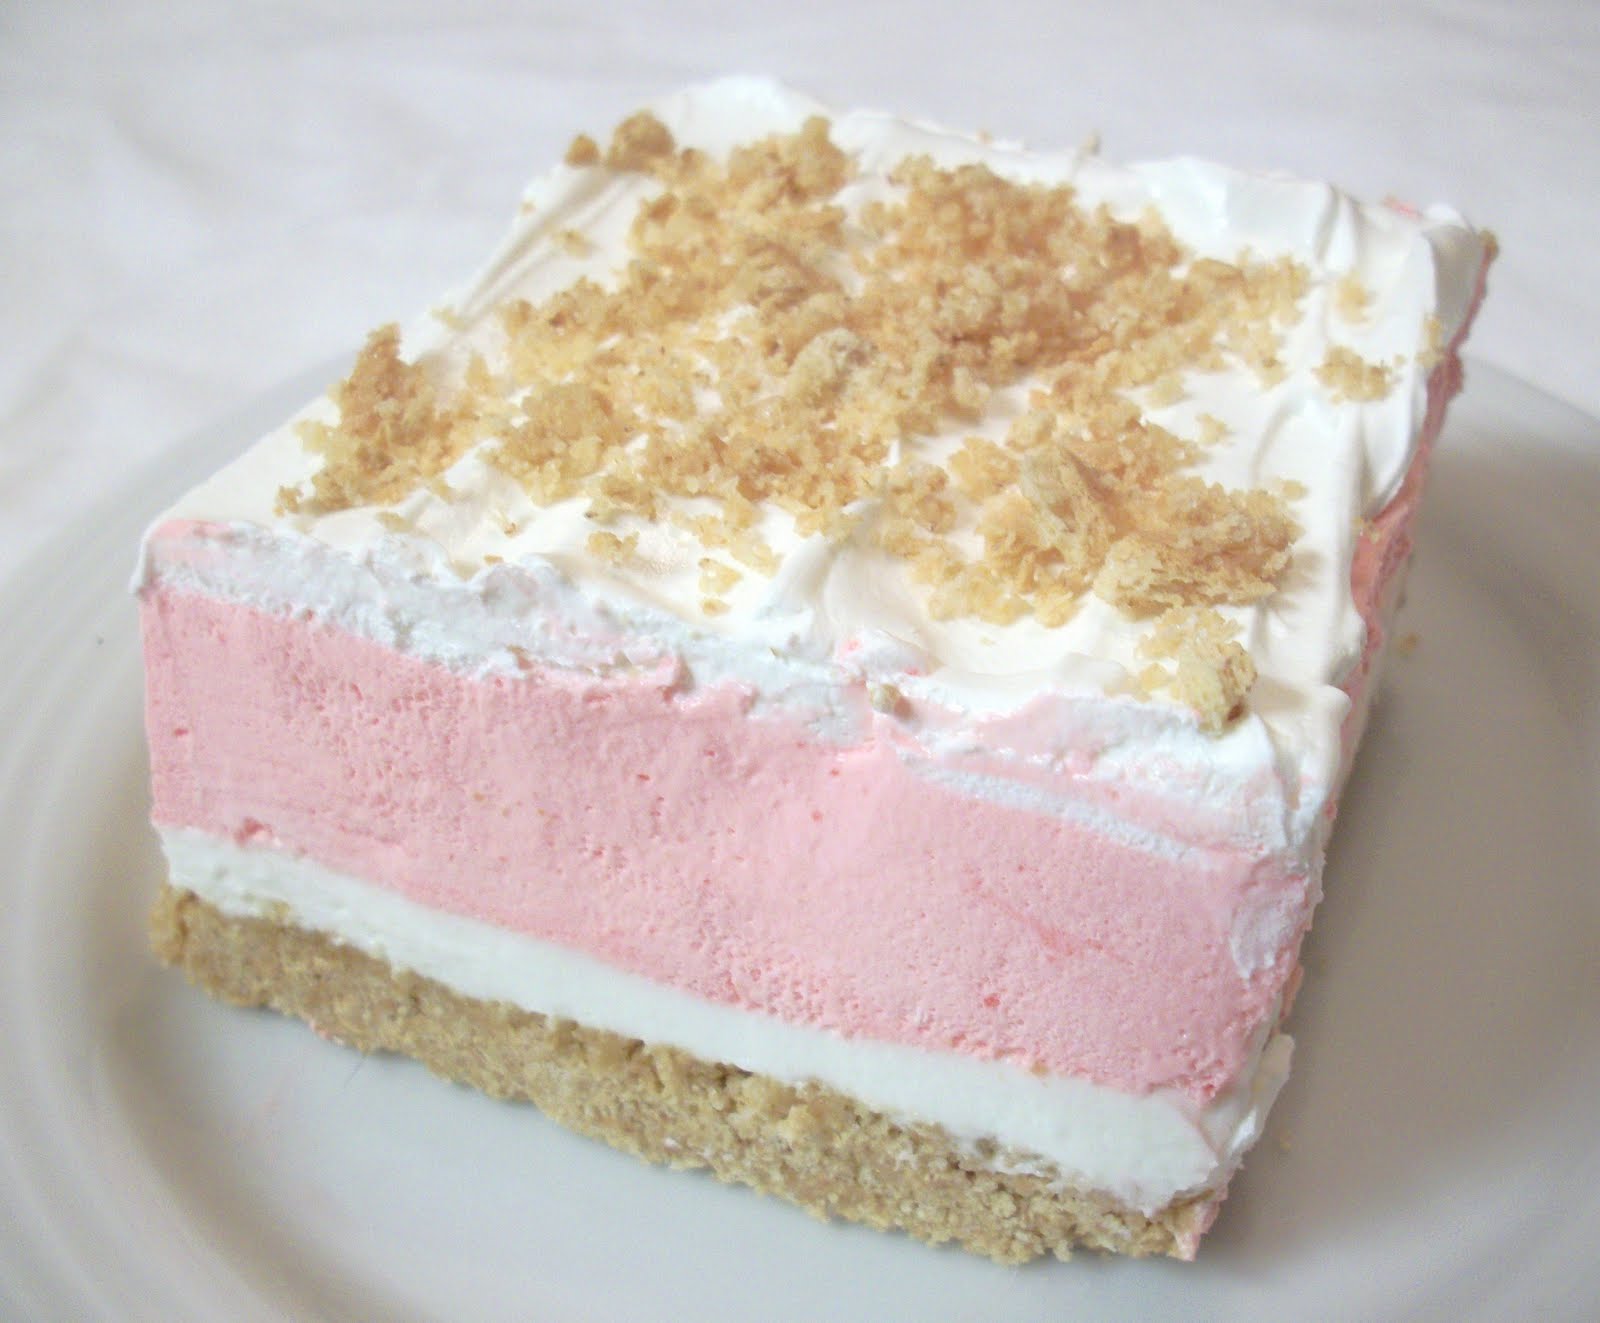 Strawberry Cream Dessert recipe